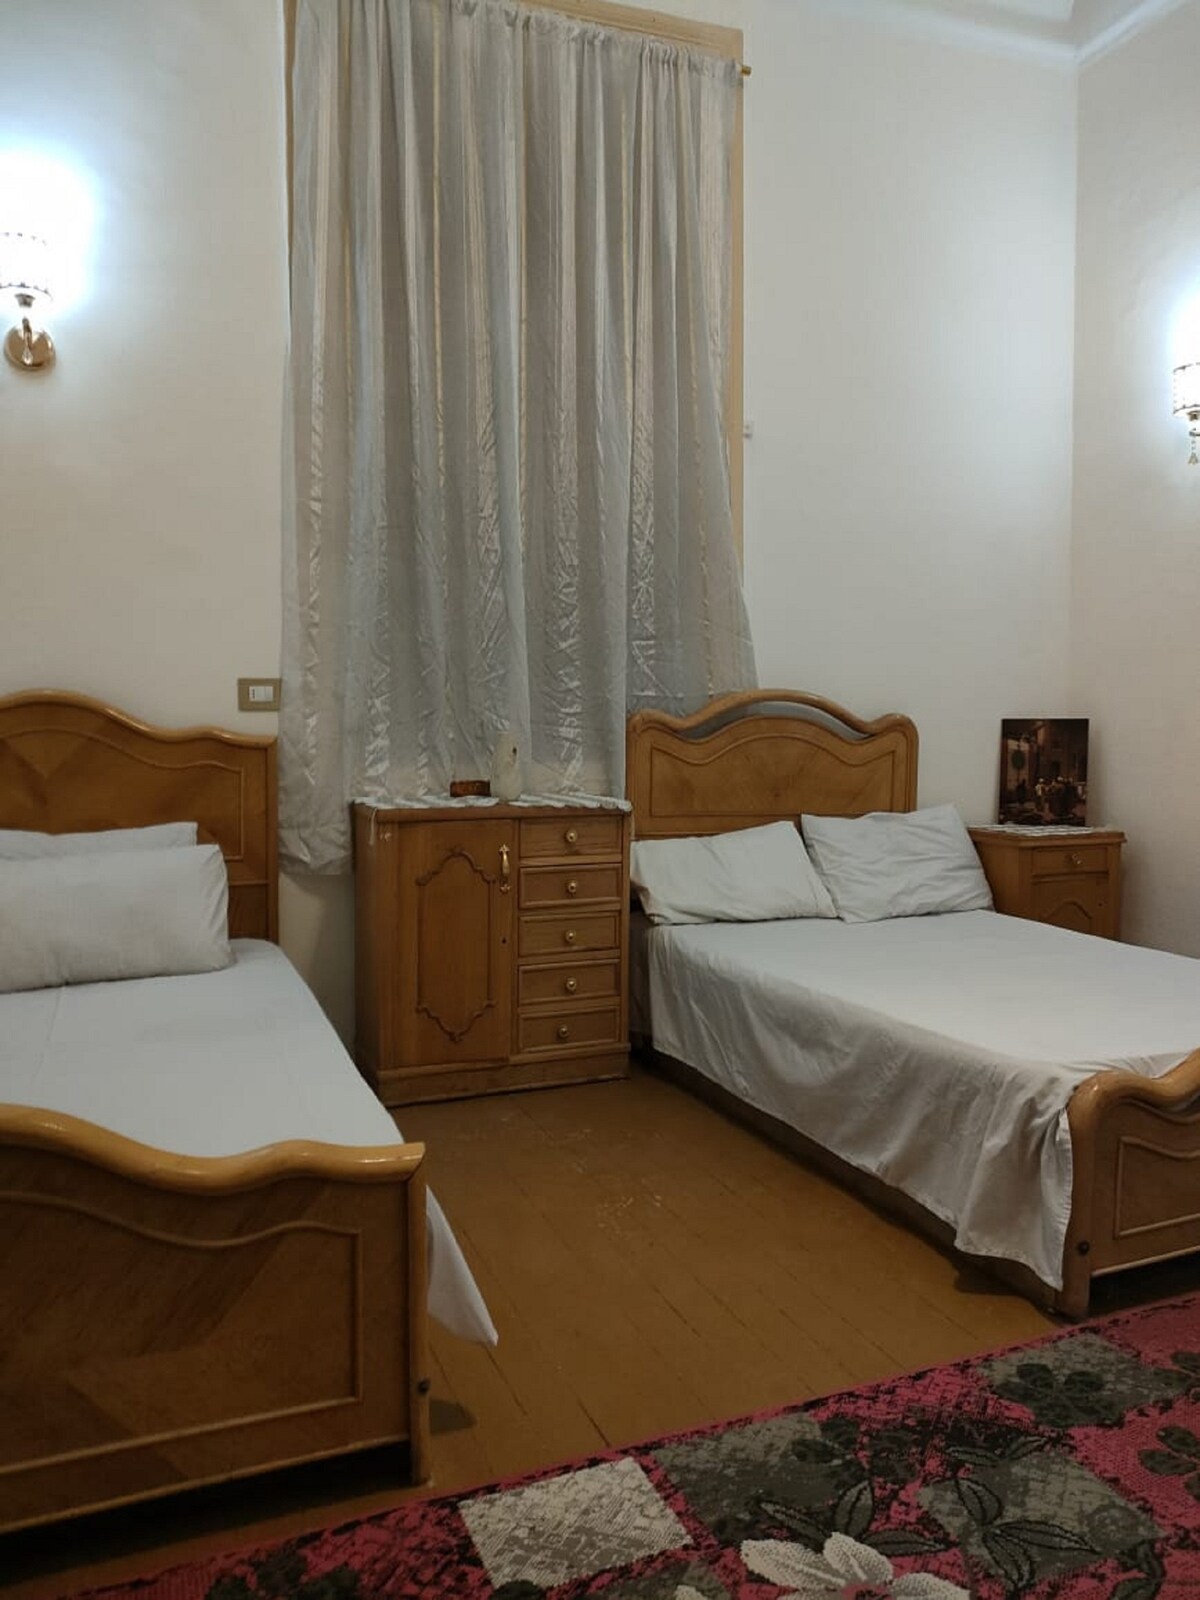 独立双人房共用卫生间2张1米宽单人床。